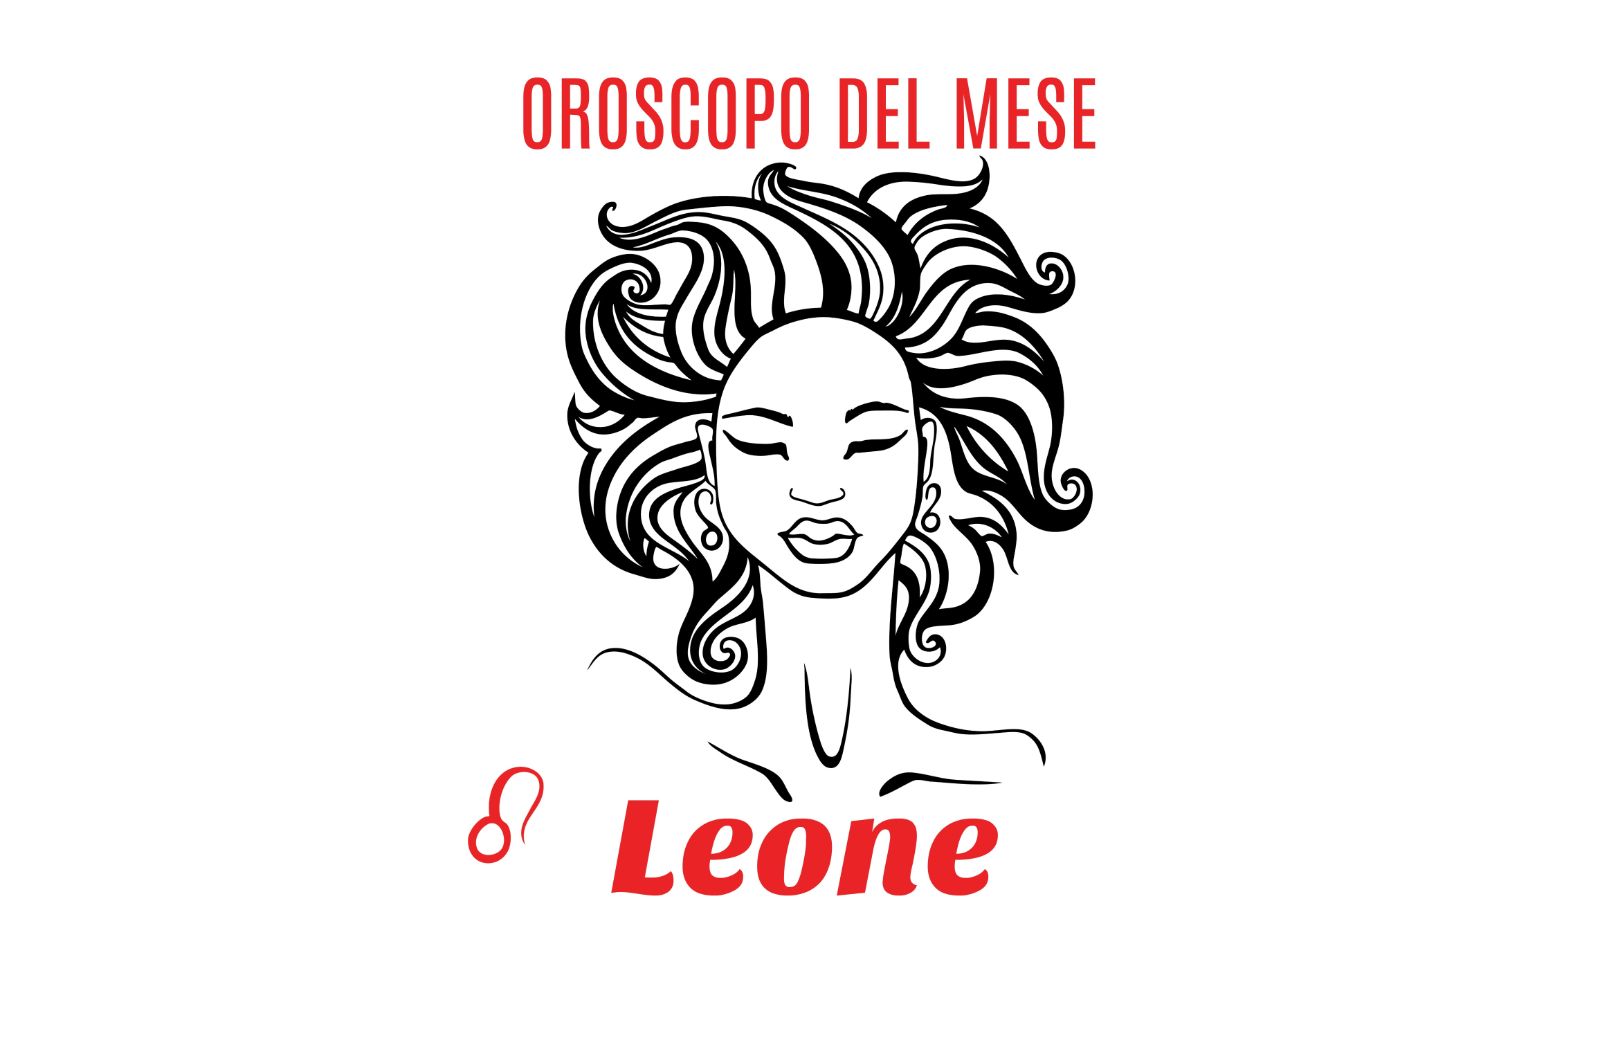 Oroscopo del mese: Leone - maggio 2019